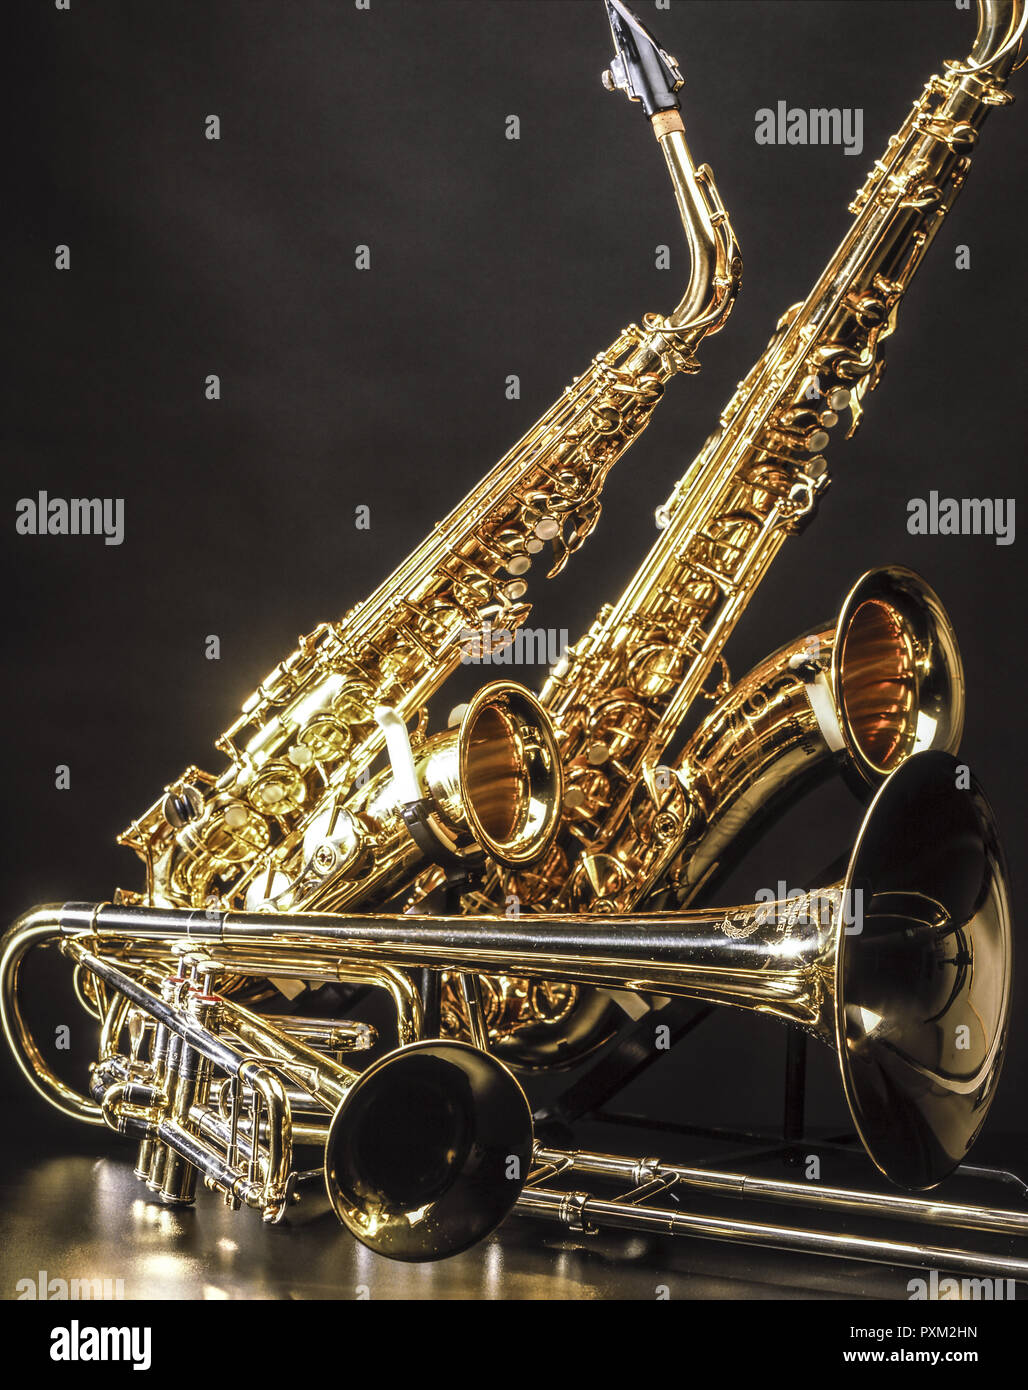 Verschiedene Musikinstrumente, Saxophon, Trompete, Posaune, Musik Stock Photo